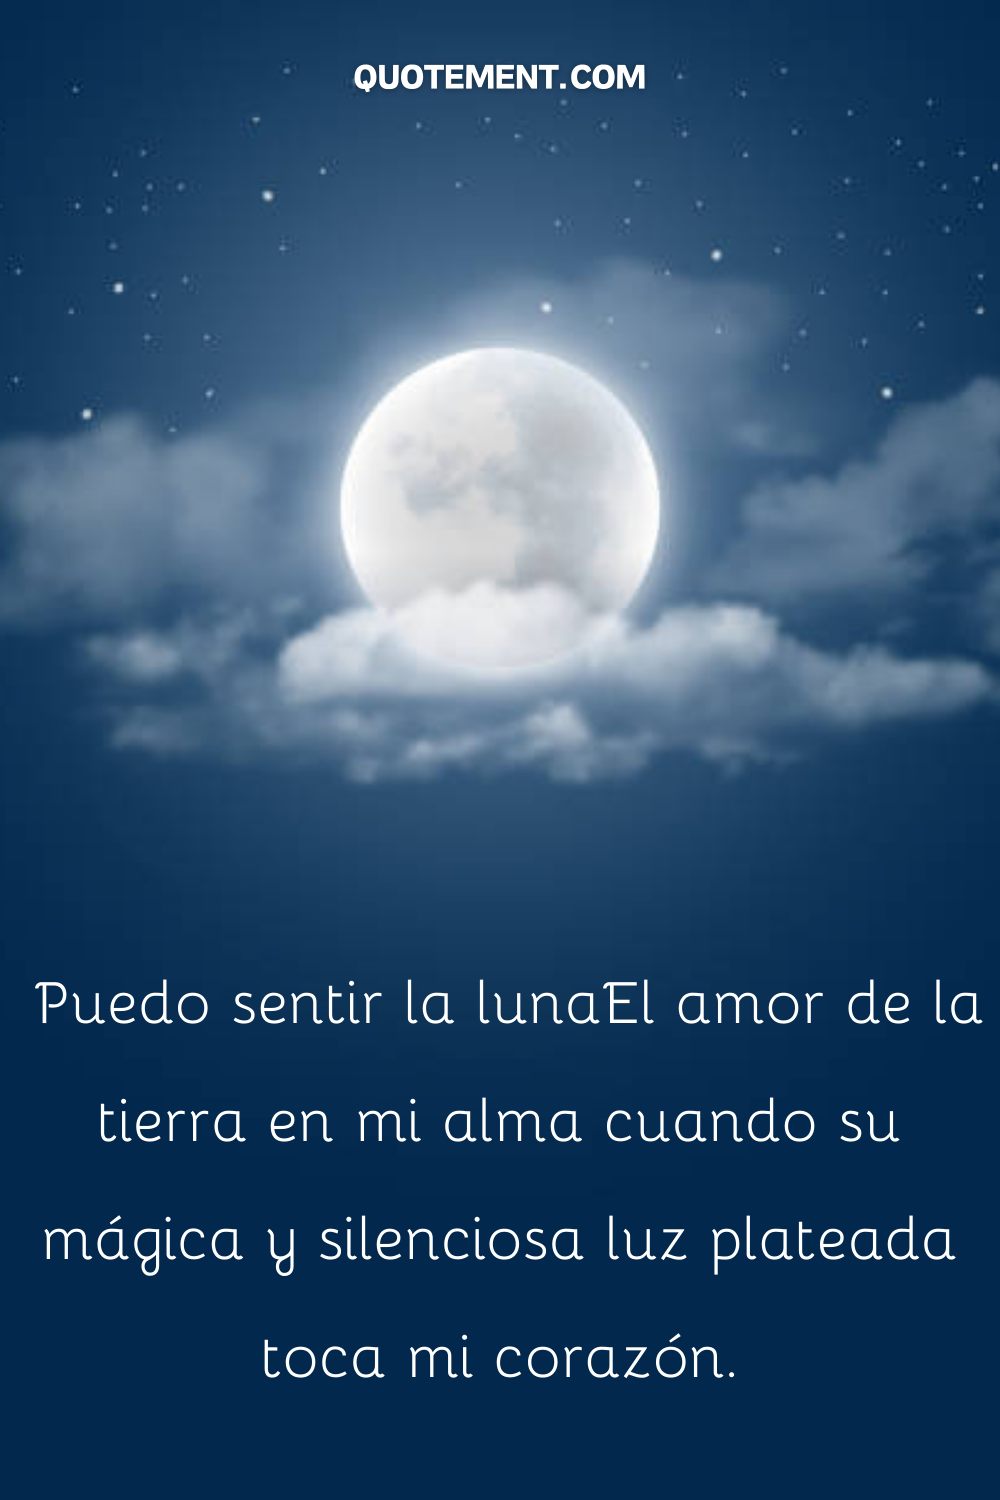 Puedo sentir el amor de la luna por la tierra en mi alma cuando su mágica y silenciosa luz plateada toca mi corazón.